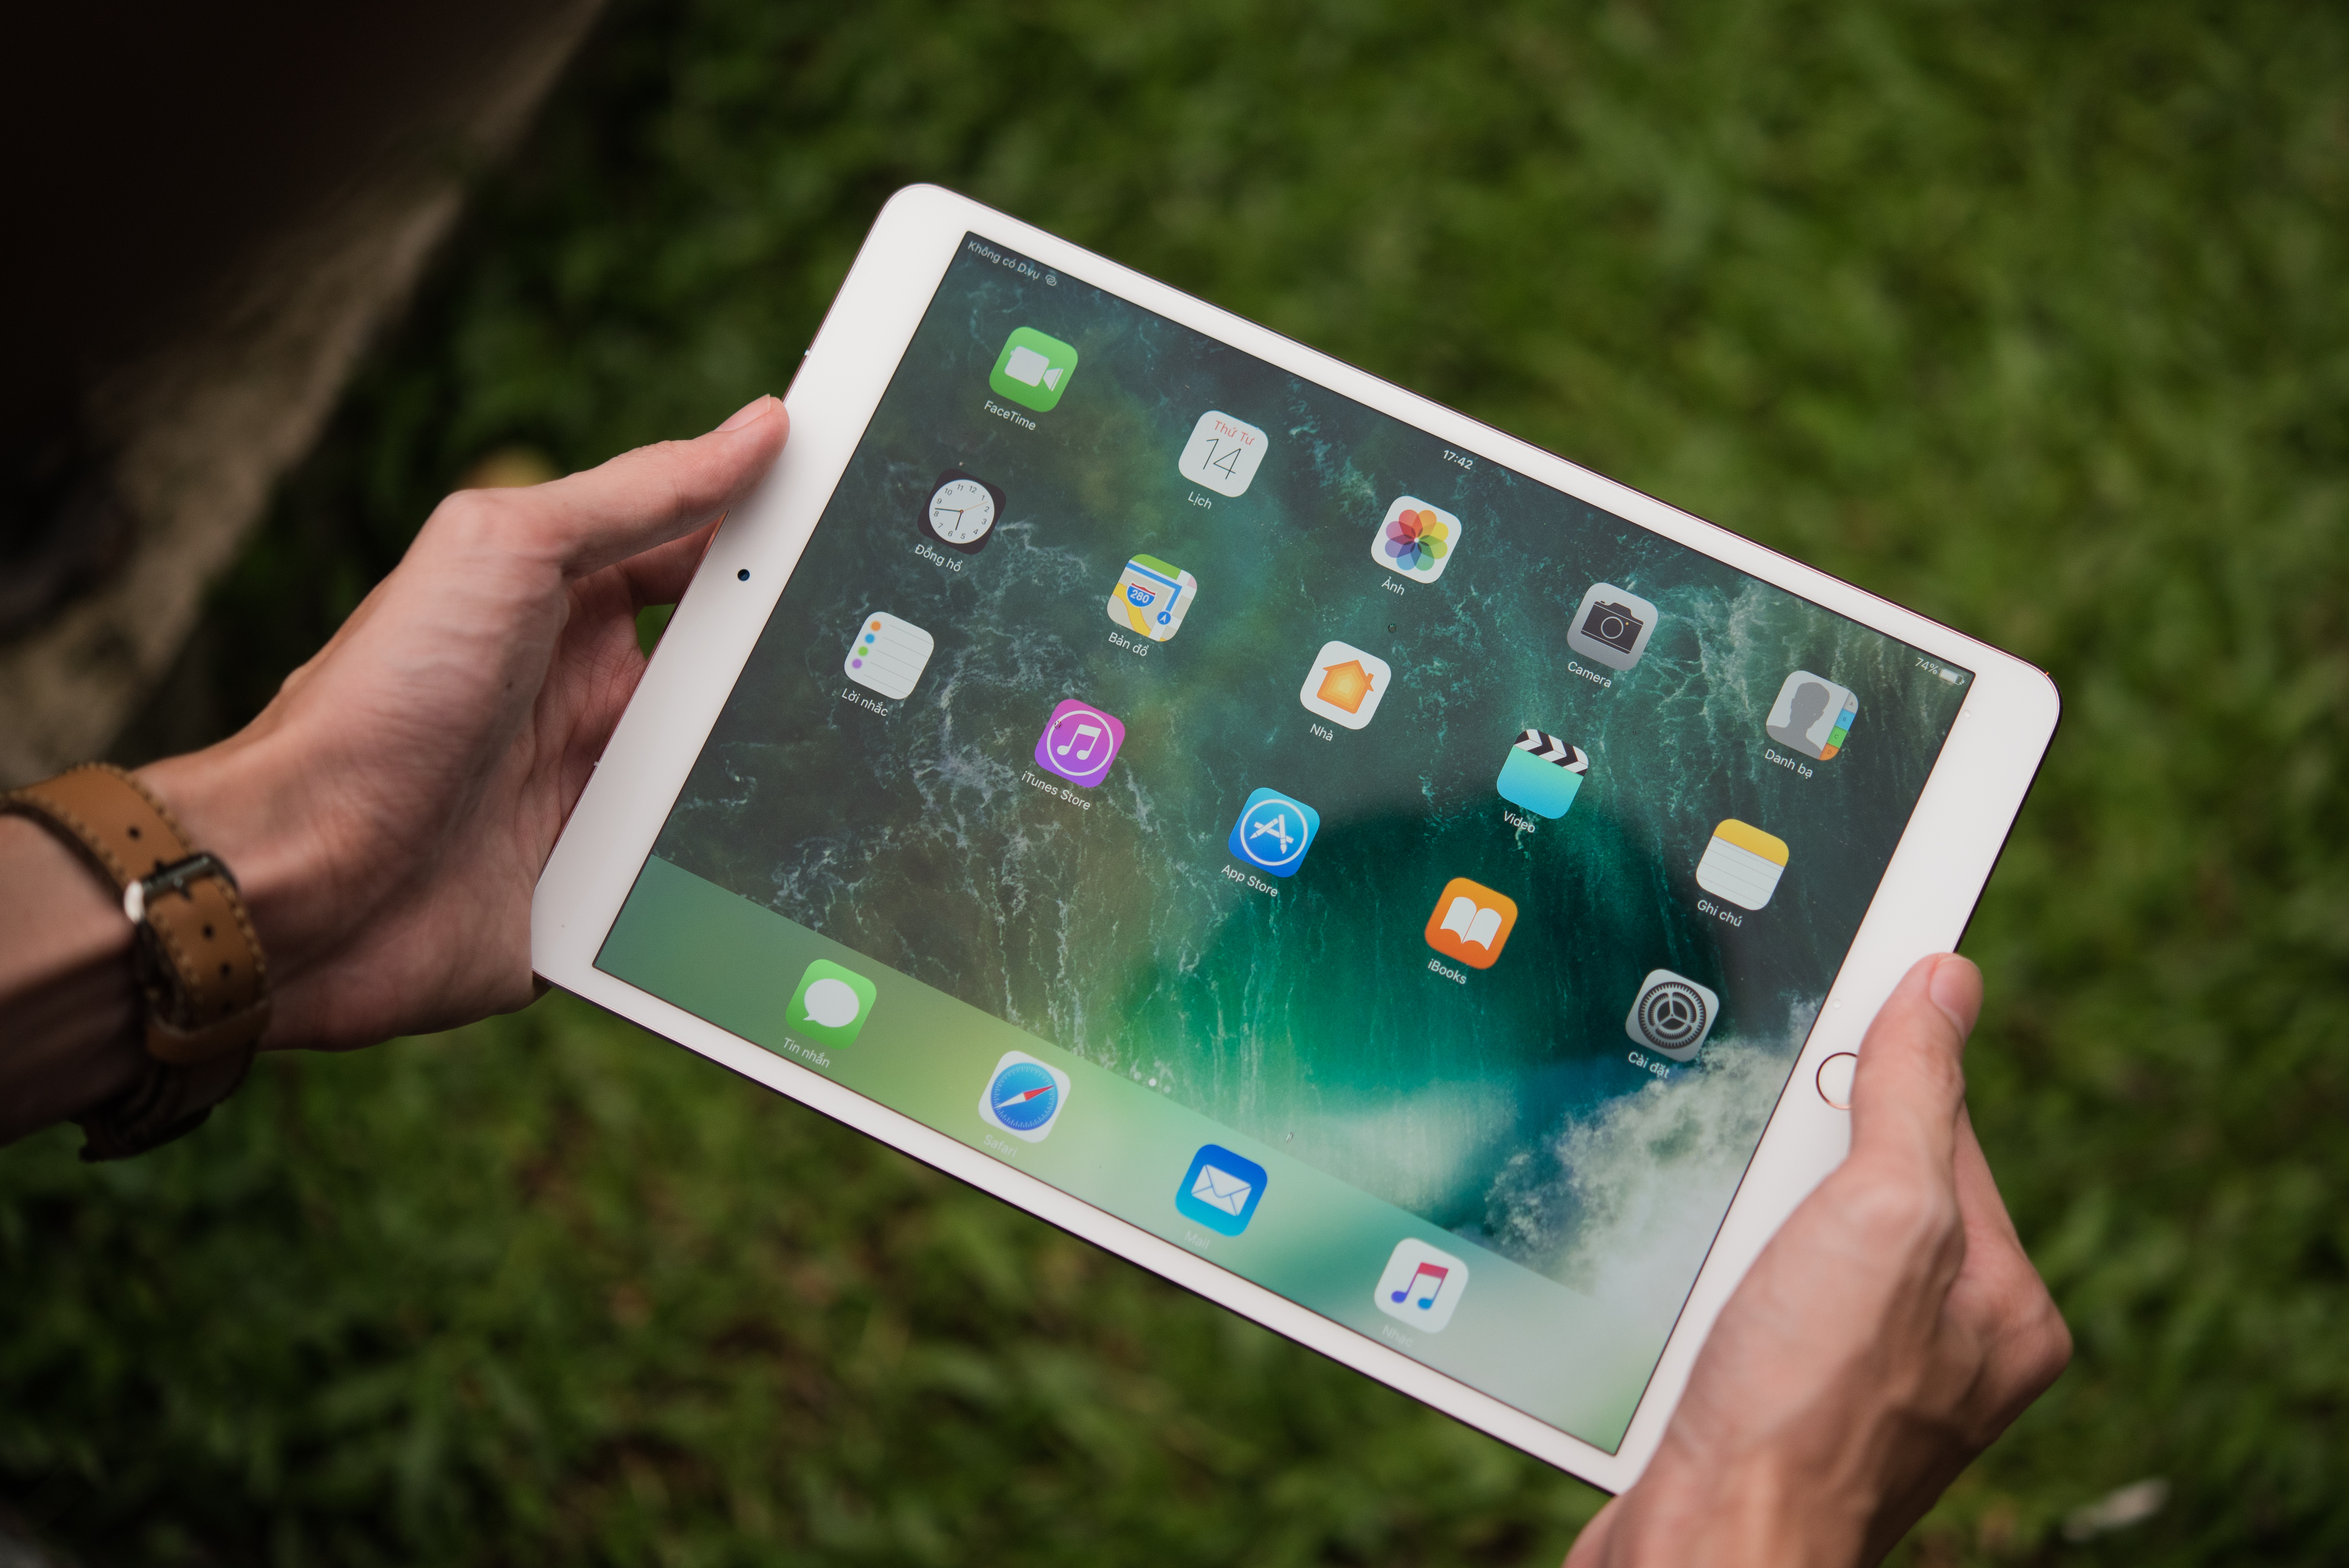 تظهر الصورة شخصًا يحمل جهاز iPad pro. هناك أدوات وتطبيقات ملونة على الشاشة.